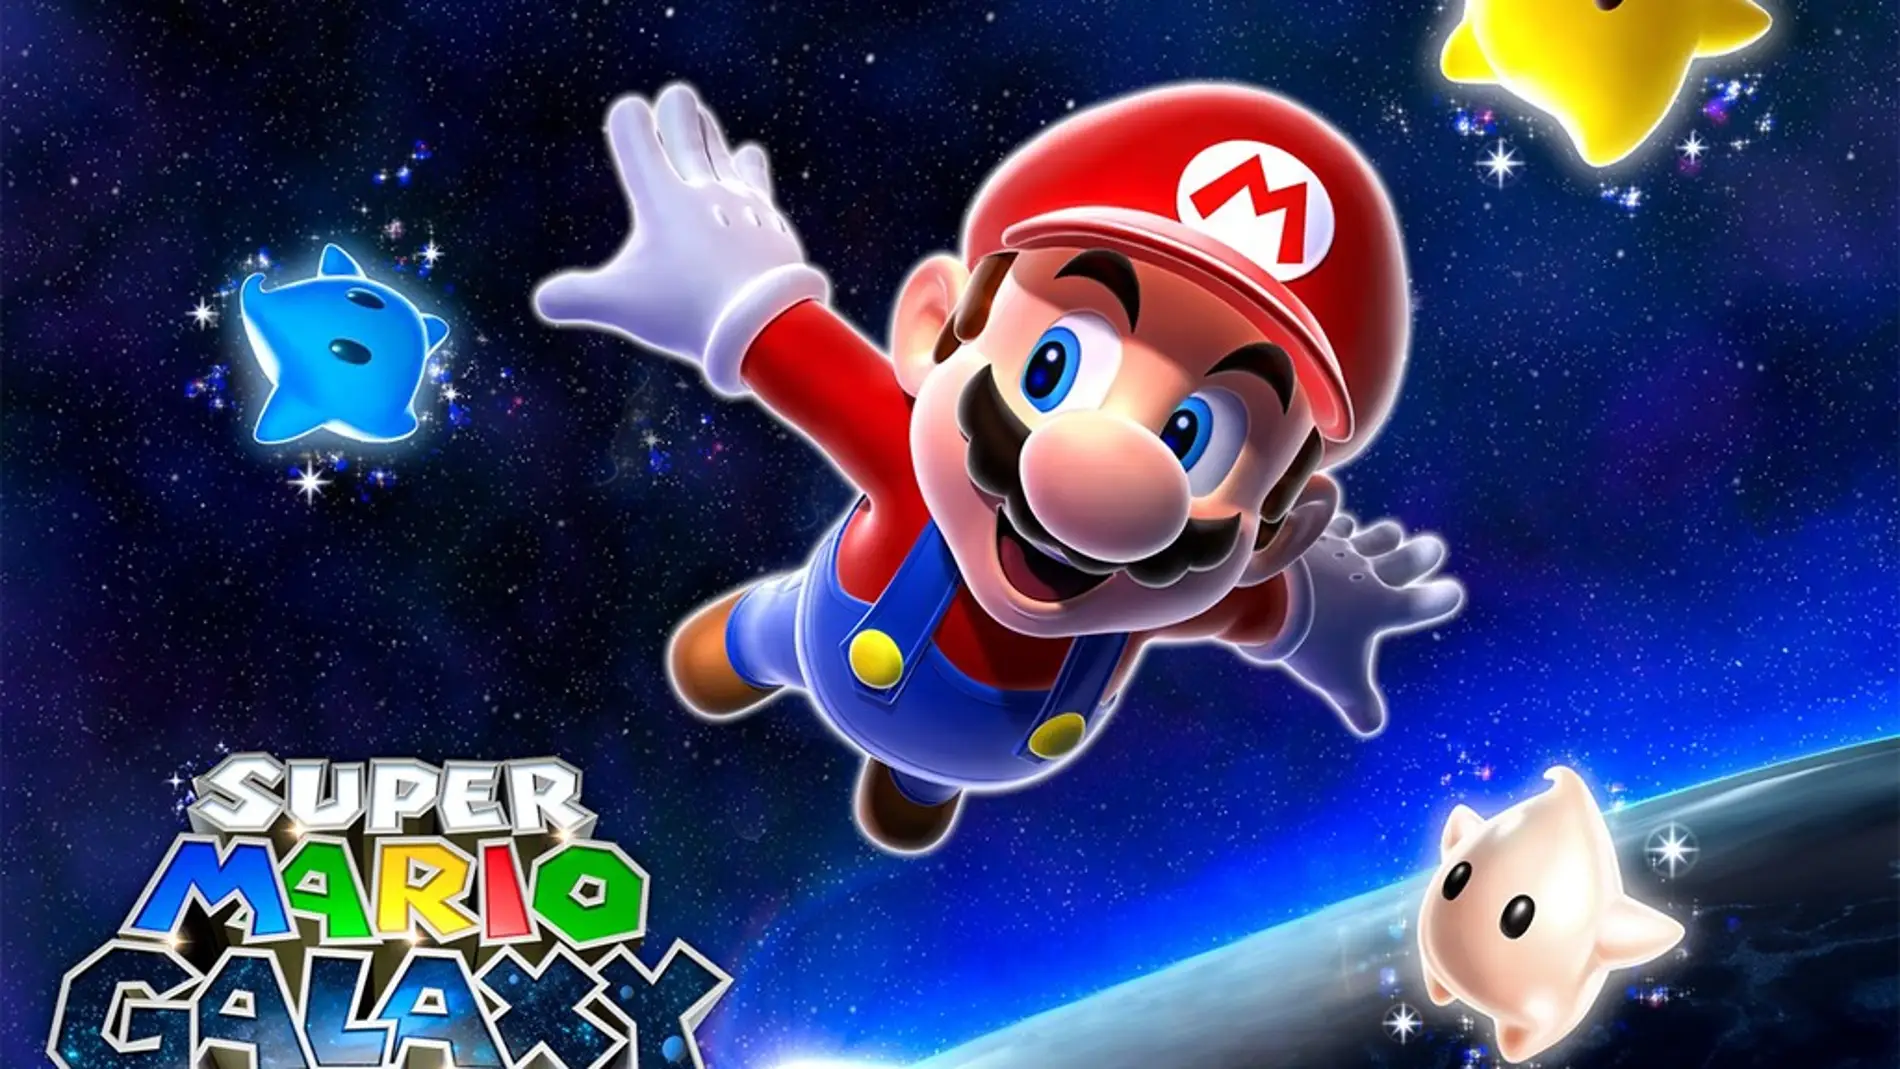 Paper Mario podría regresar mediante una remasterización de uno de